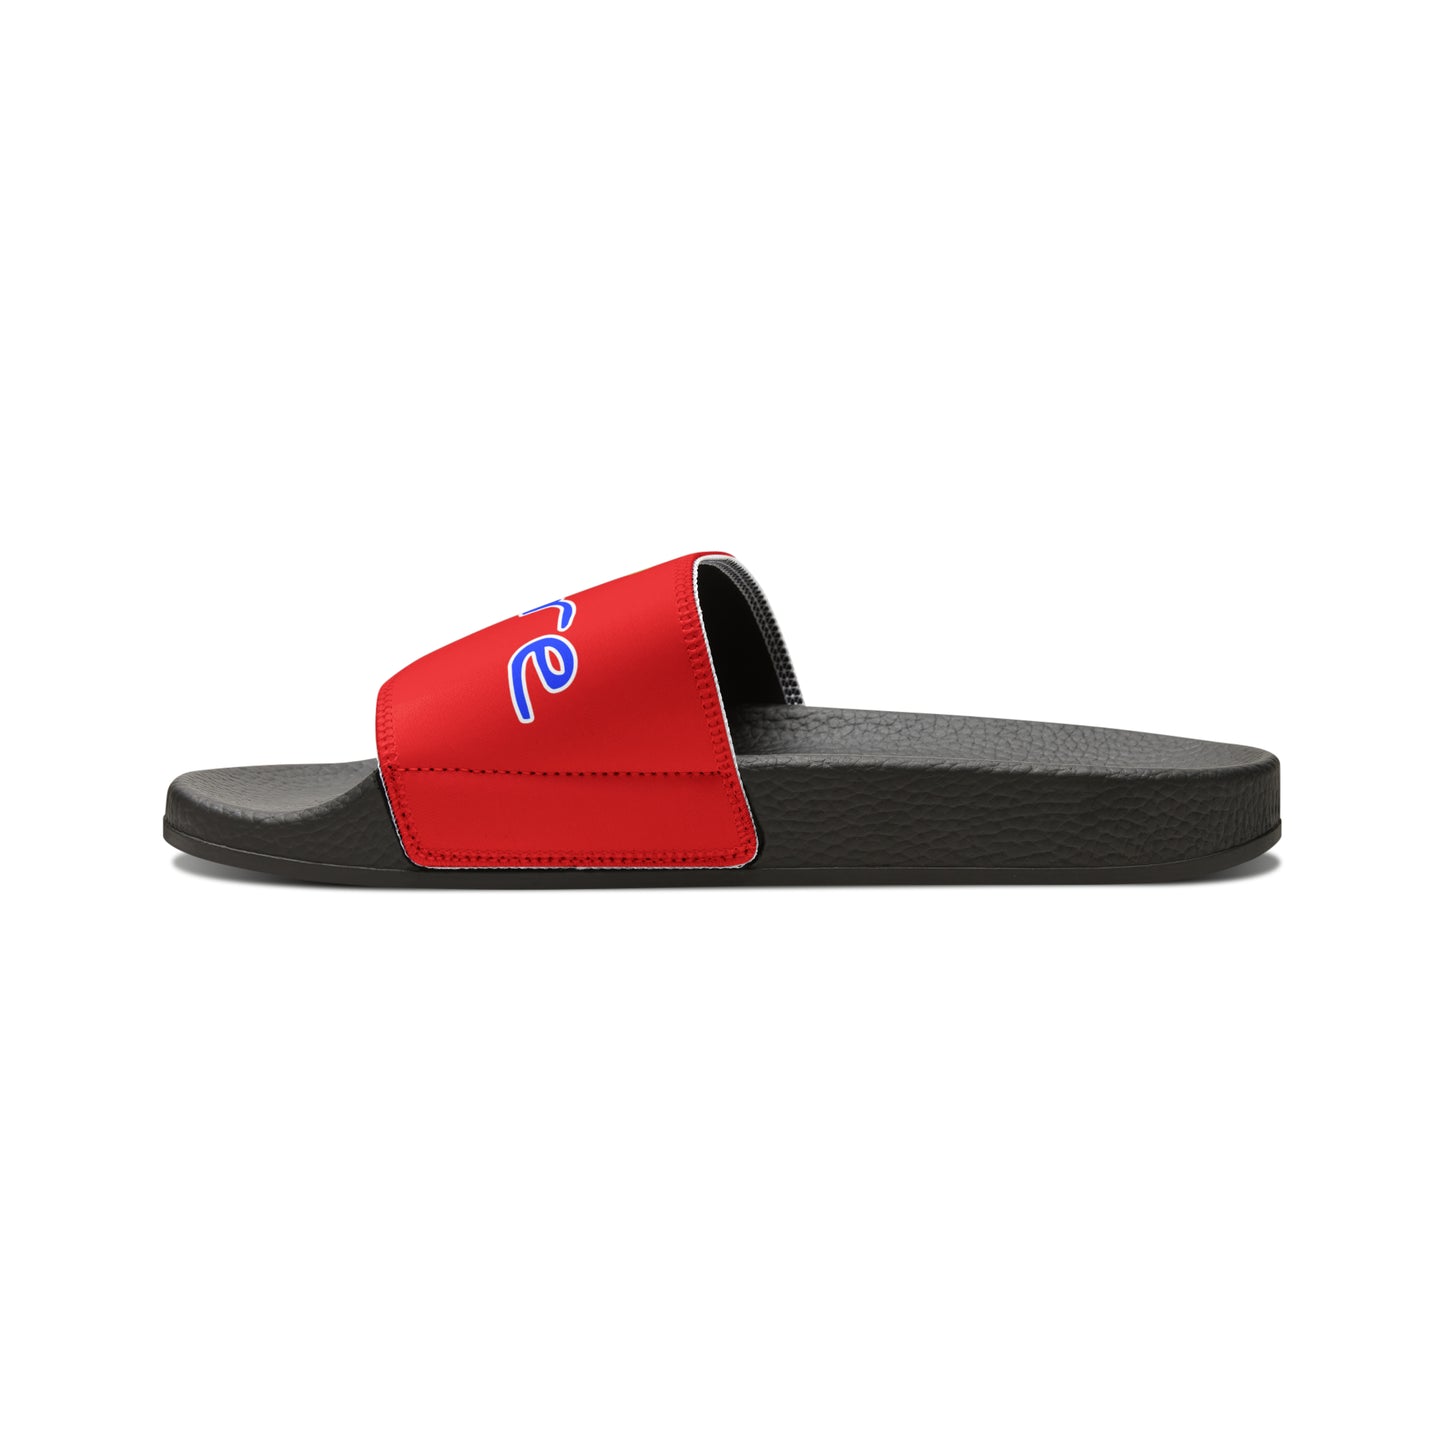 Men's Neon & Blue ALdre Slide Sandals (Red)